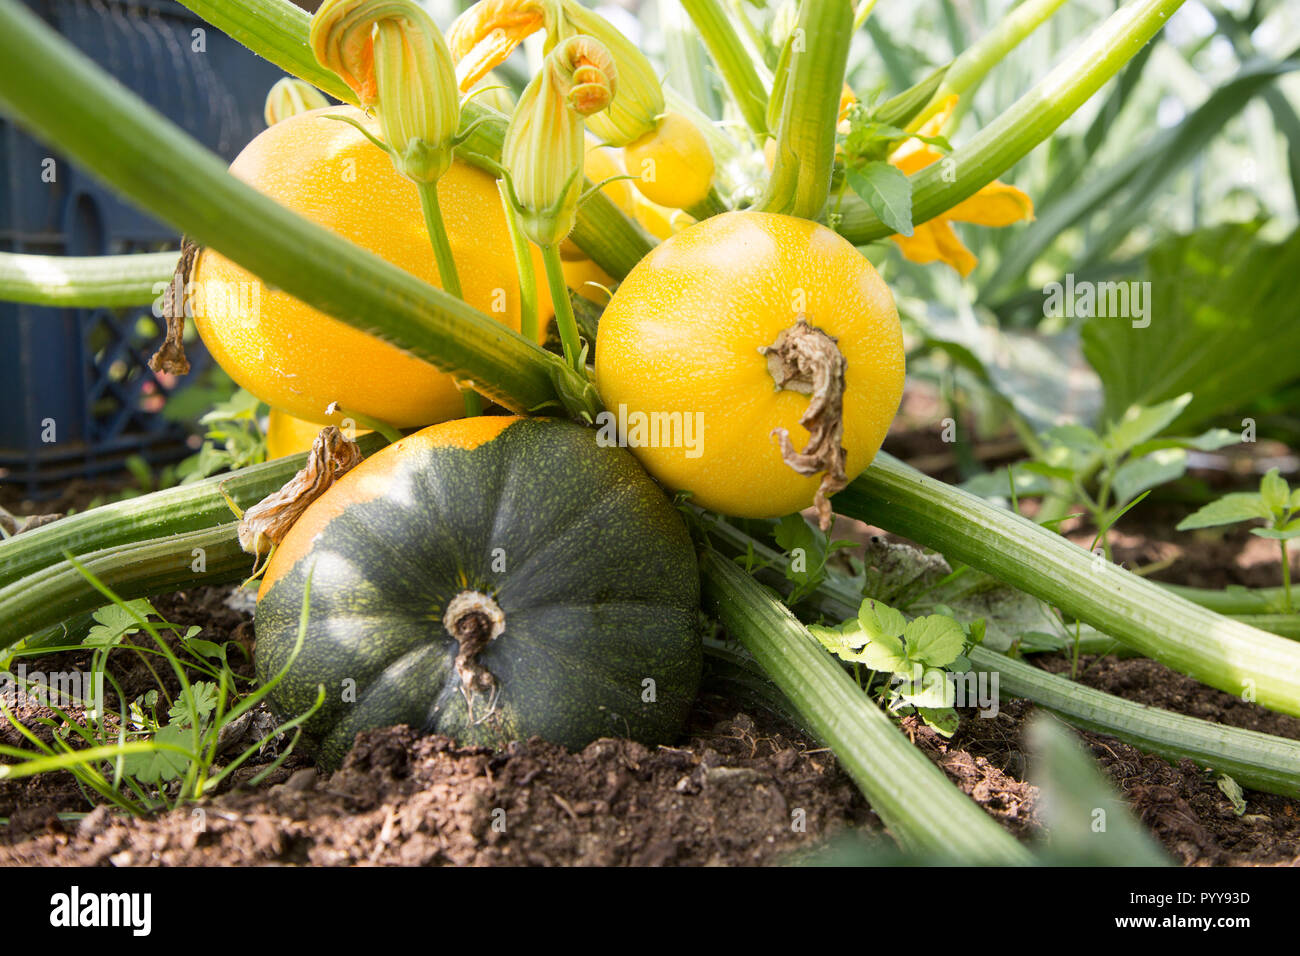 Chiudere fino al livello del suolo di Zucchine Zucchine di crescita della pianta rotonda gialla frutto Suffolk, Inghilterra, Regno Unito Foto Stock